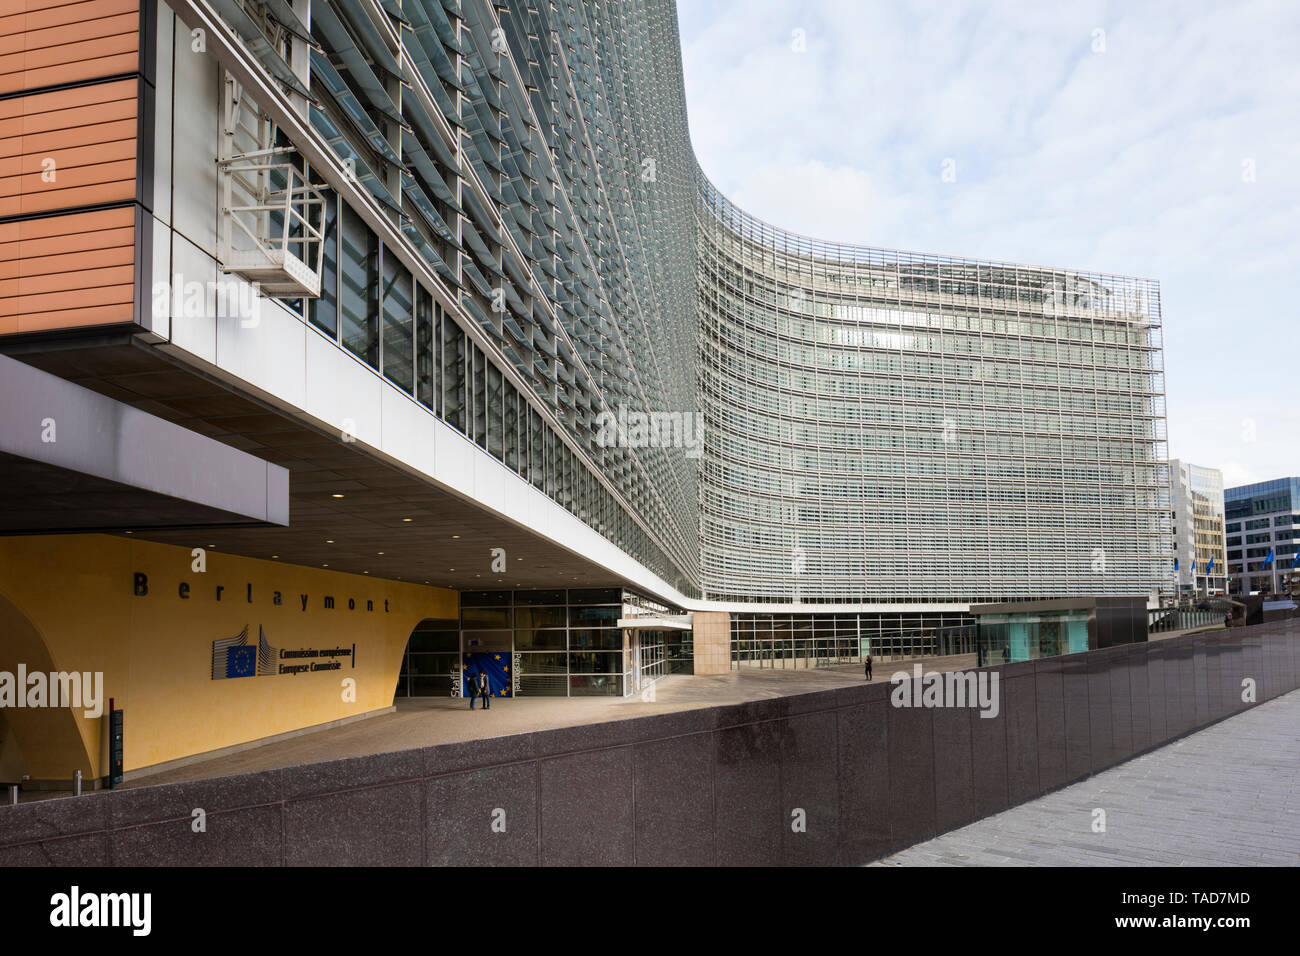 Belgien, Brüssel, Berlaymont, Europäische Kommission, Verwaltungsgebäude der Europäischen Union Stockfoto